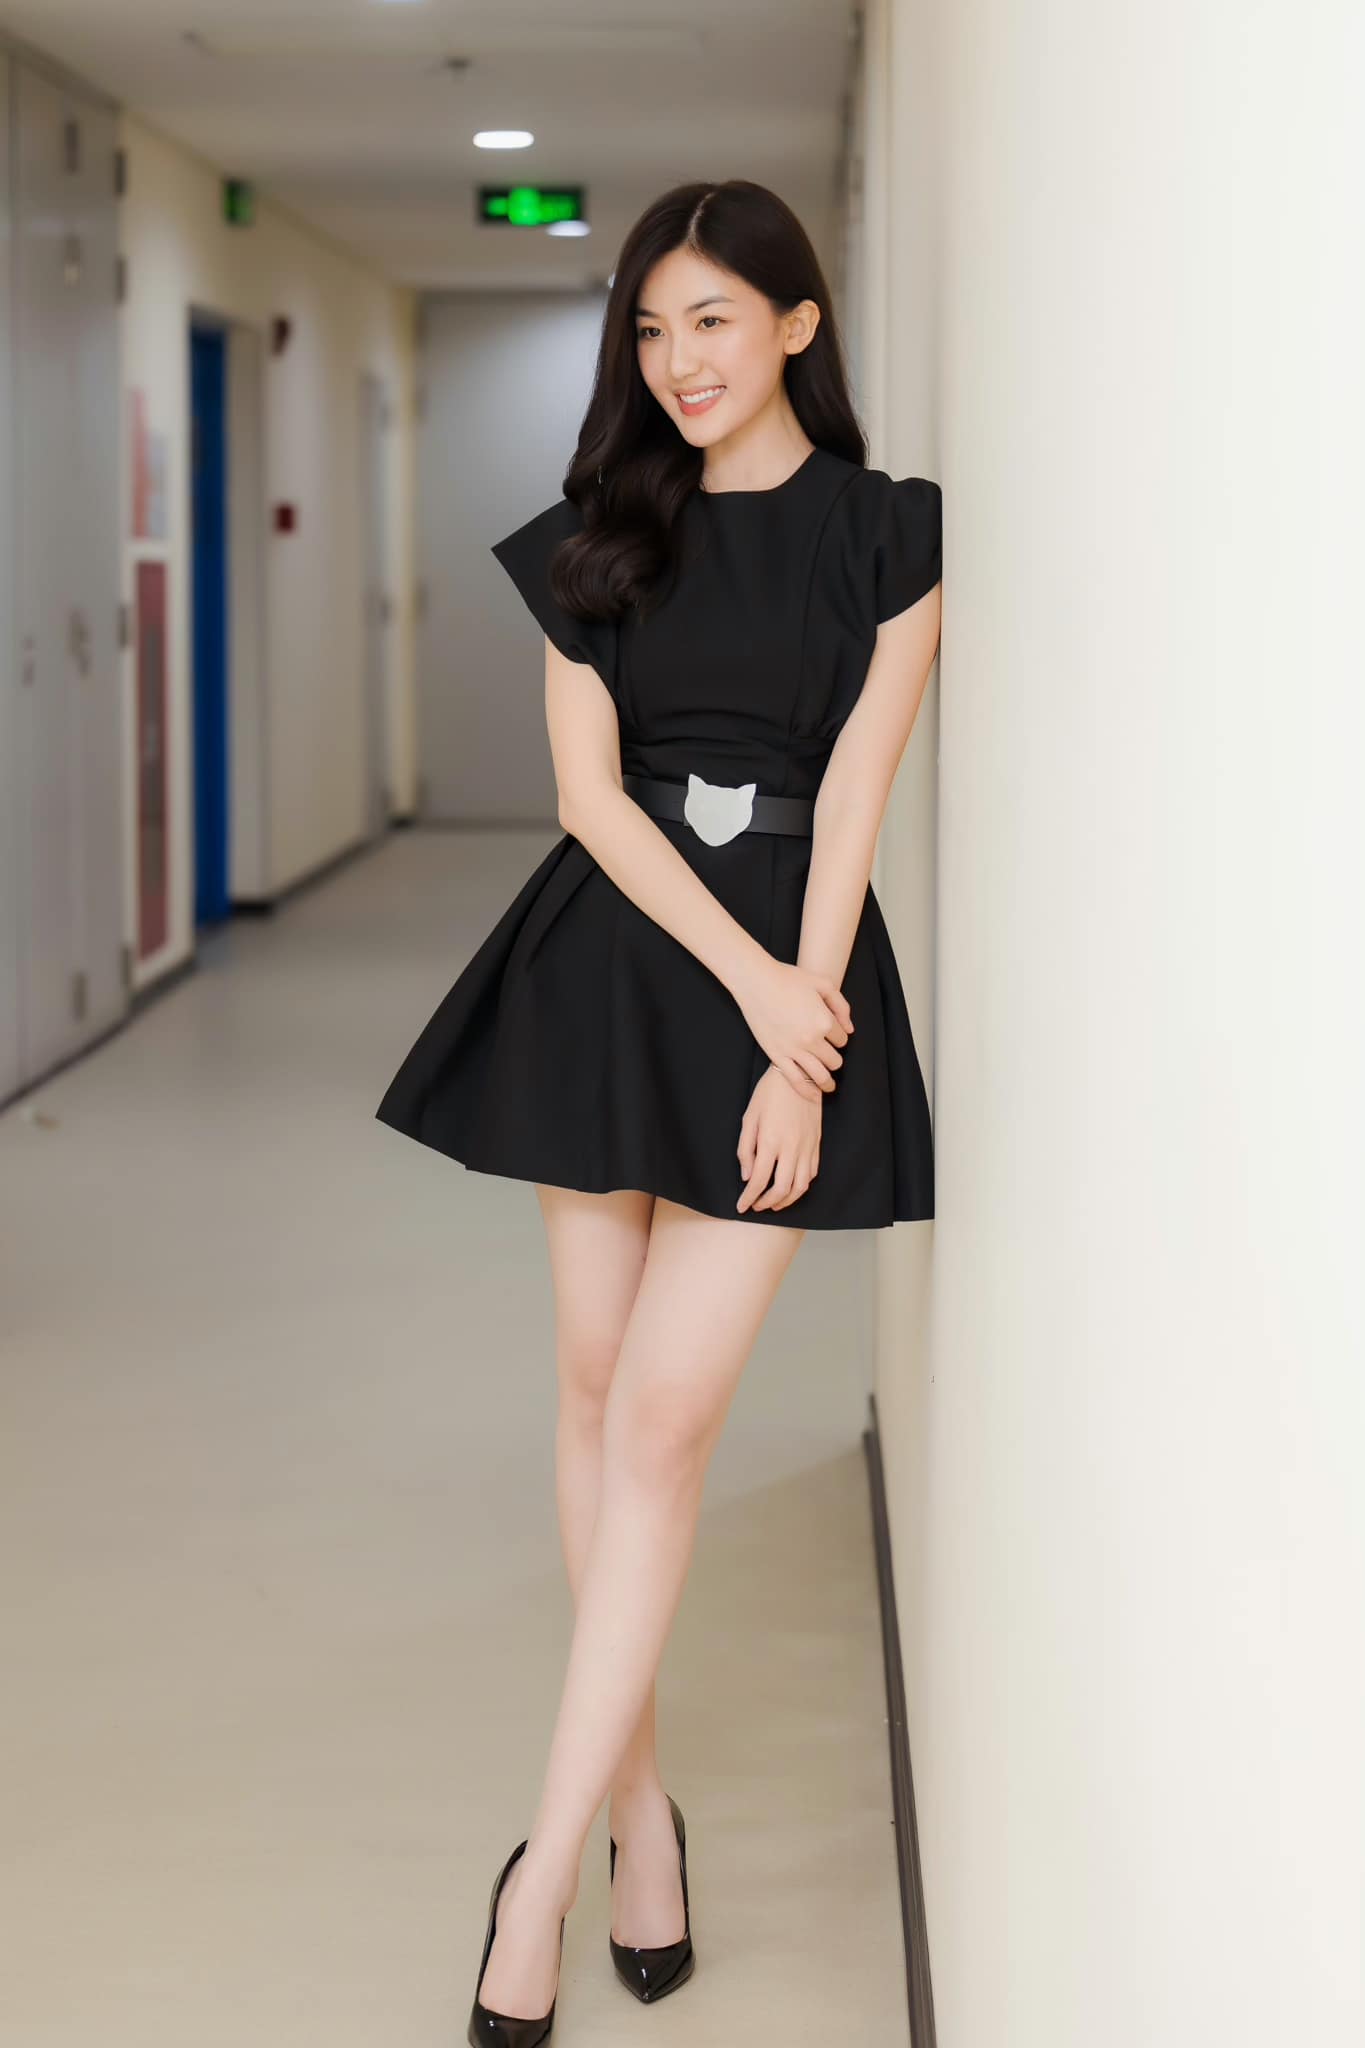 Nữ diễn viên quê Thanh Hóa mặt xinh, dáng đẹp cao hơn 1m70 chẳng thua kém hoa hậu - 10